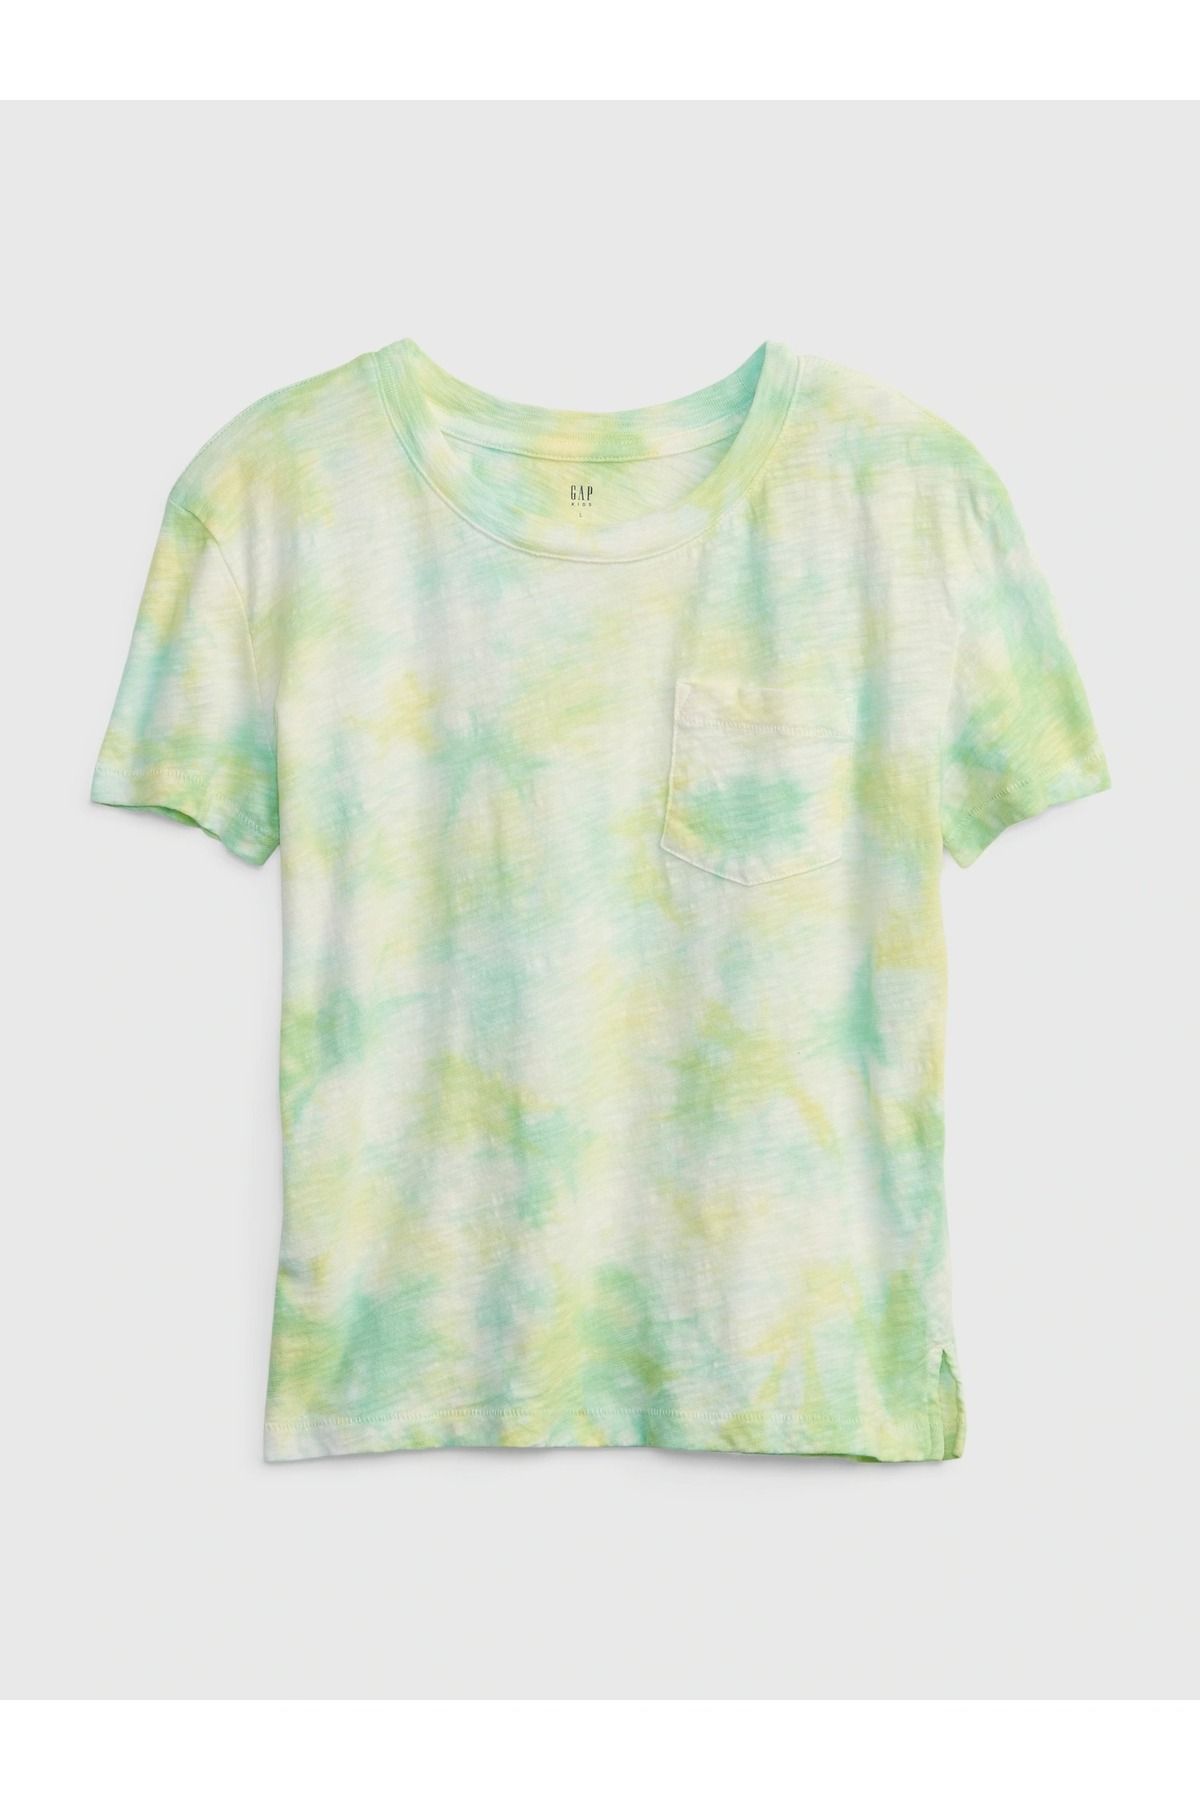 GAP Kız Çocuk Yeşil Batik 100% Organik Pamuk Cep Detaylı T-shirt